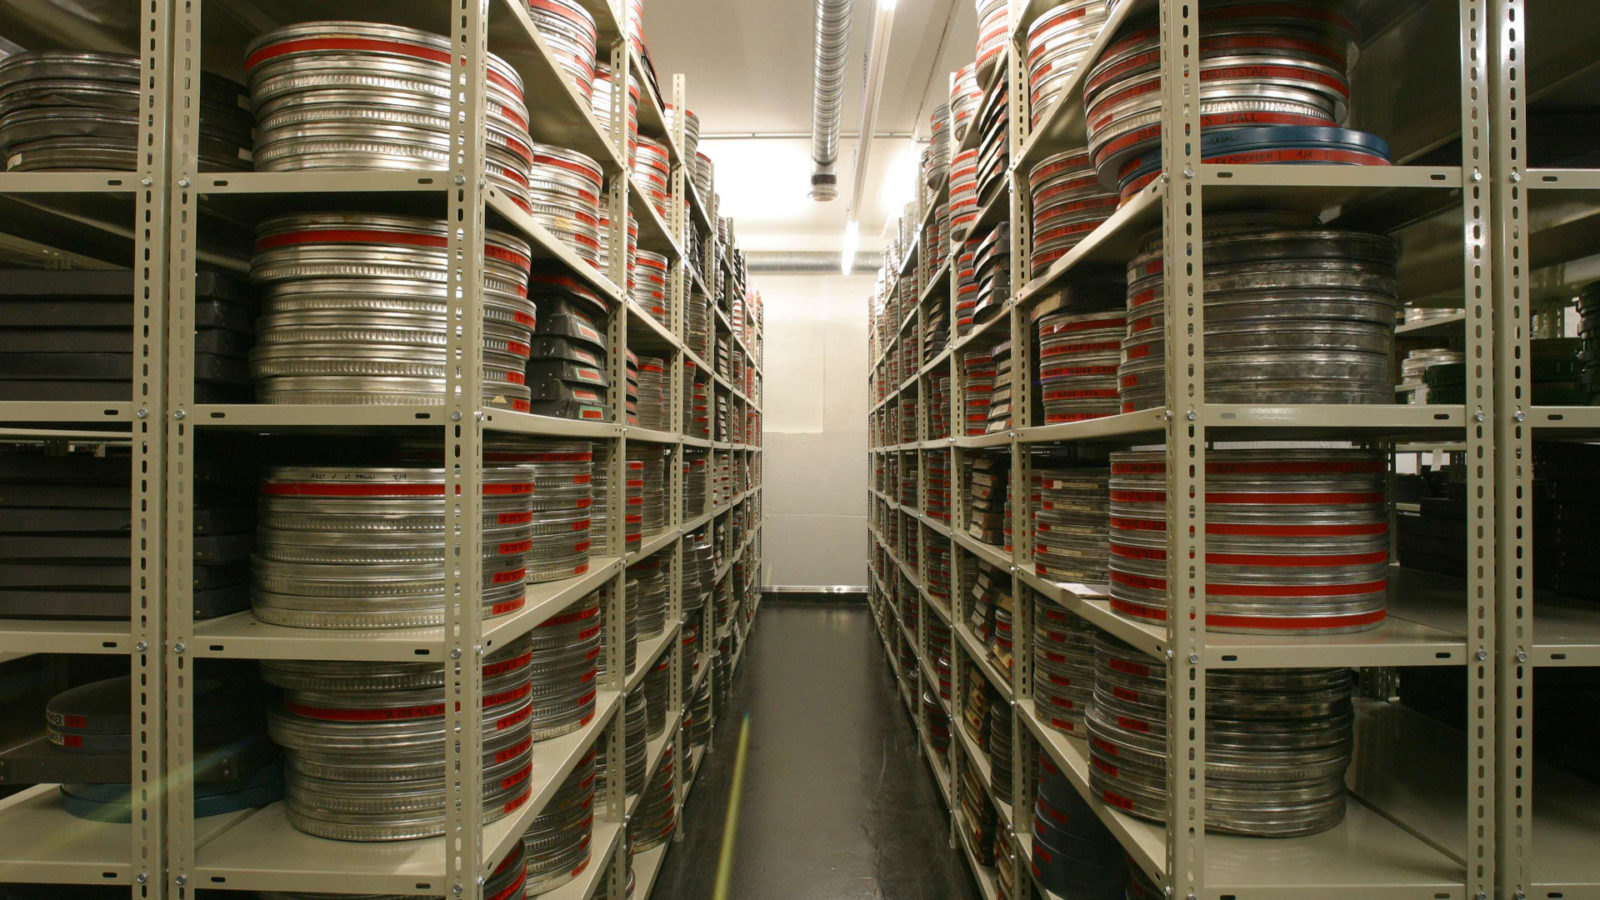 Filmbänder auf Regalen im Filmarchiv